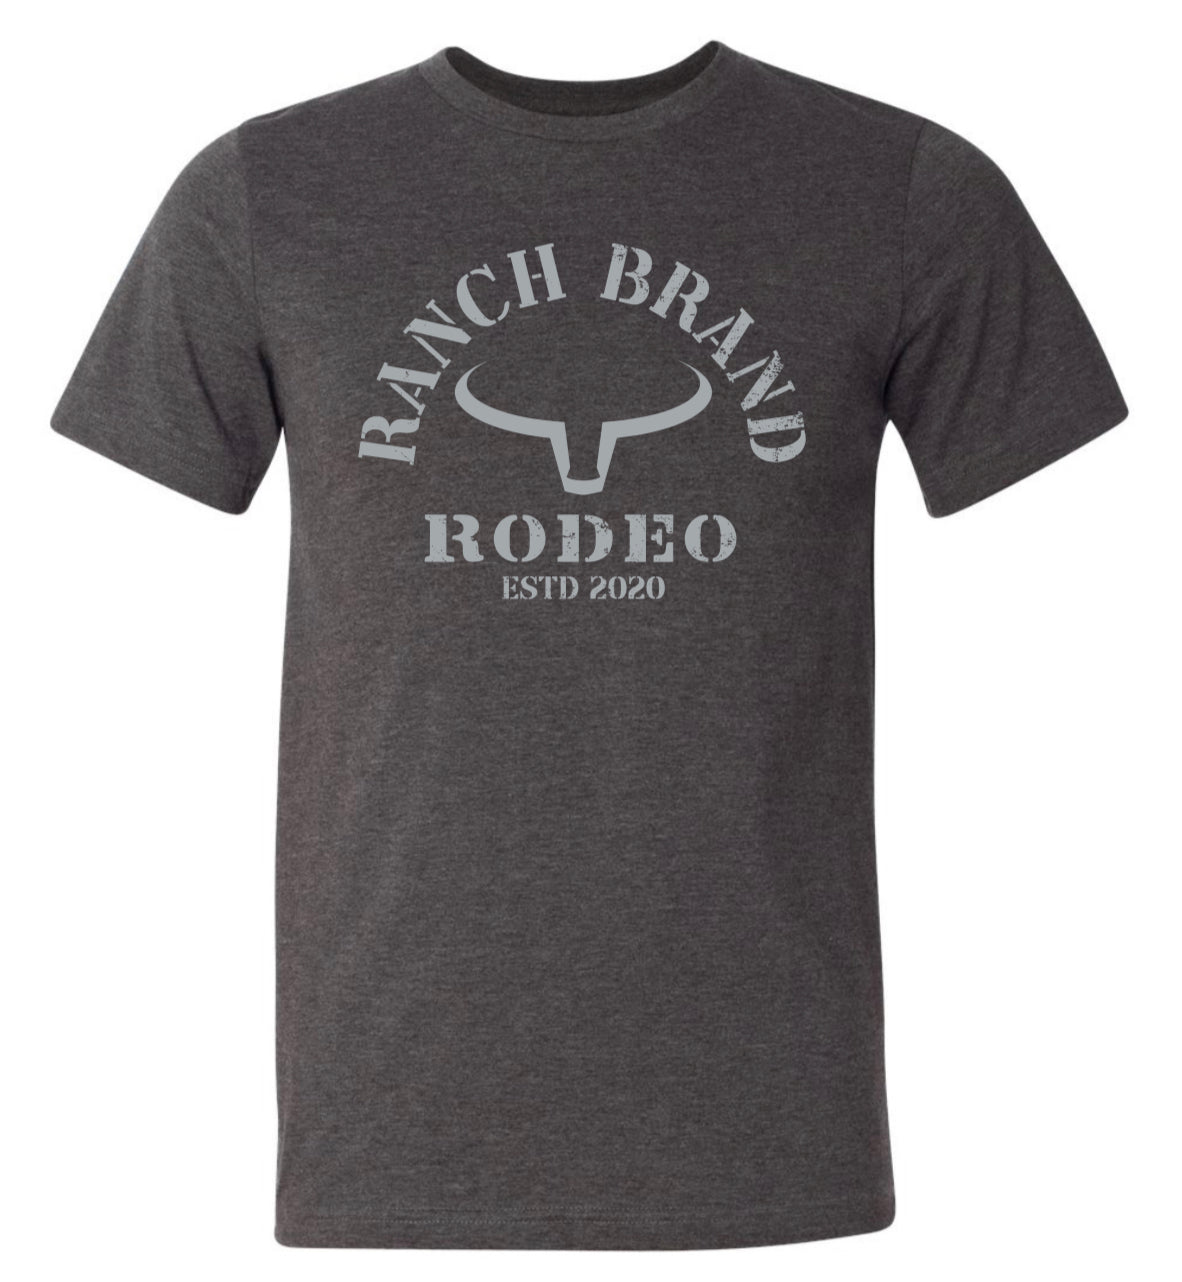 Ranch Brand | Rodeo Homme | Gris Foncé logo Gris